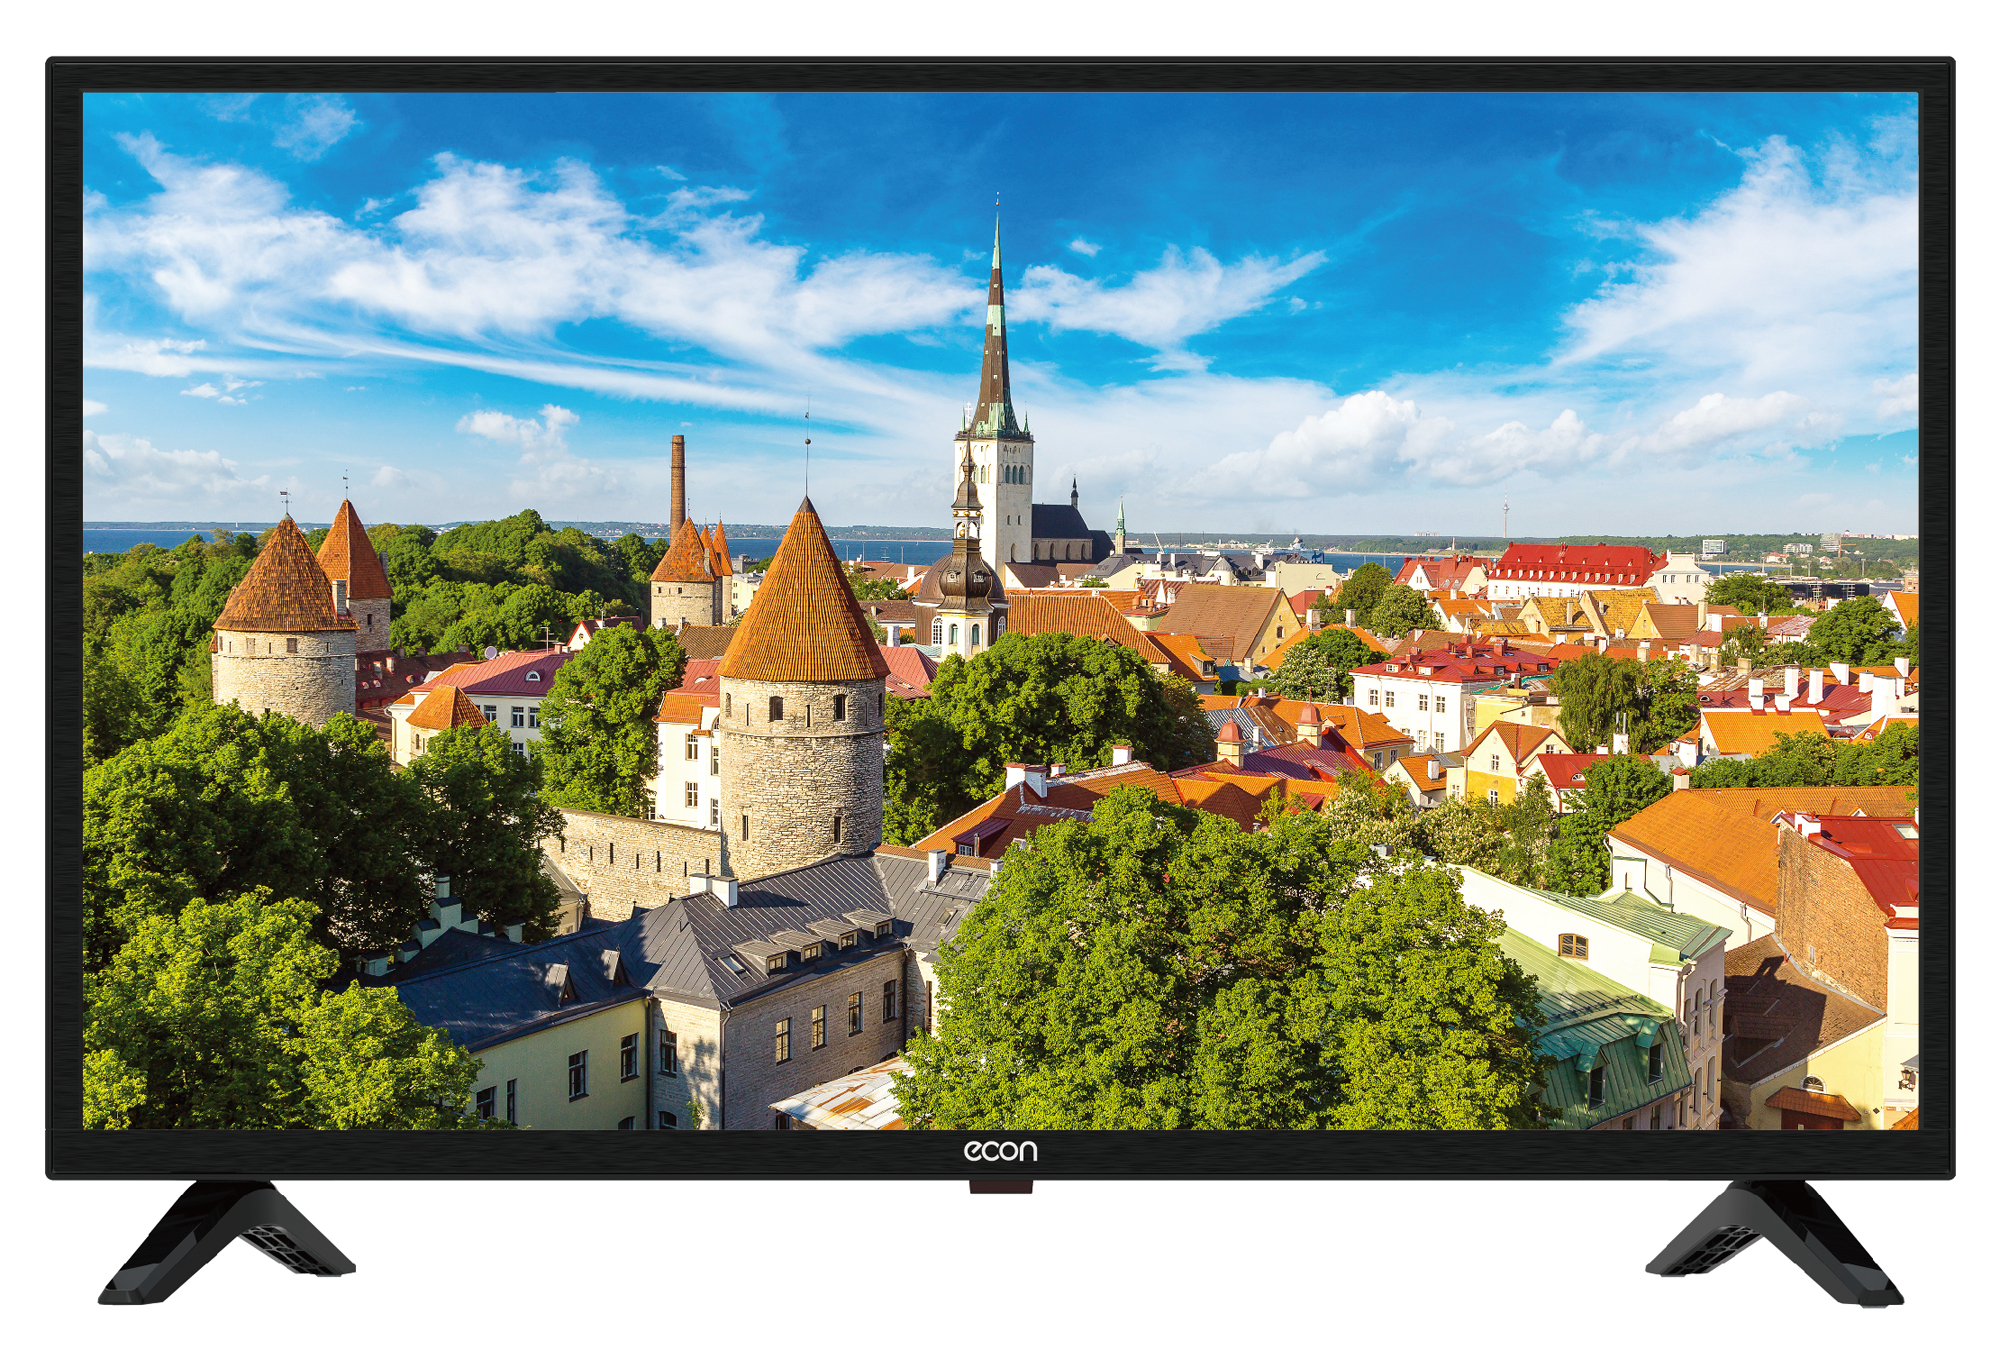 Картинка Телевизор EX-24HT007B по разумной цене купить в интернет магазине mall.su